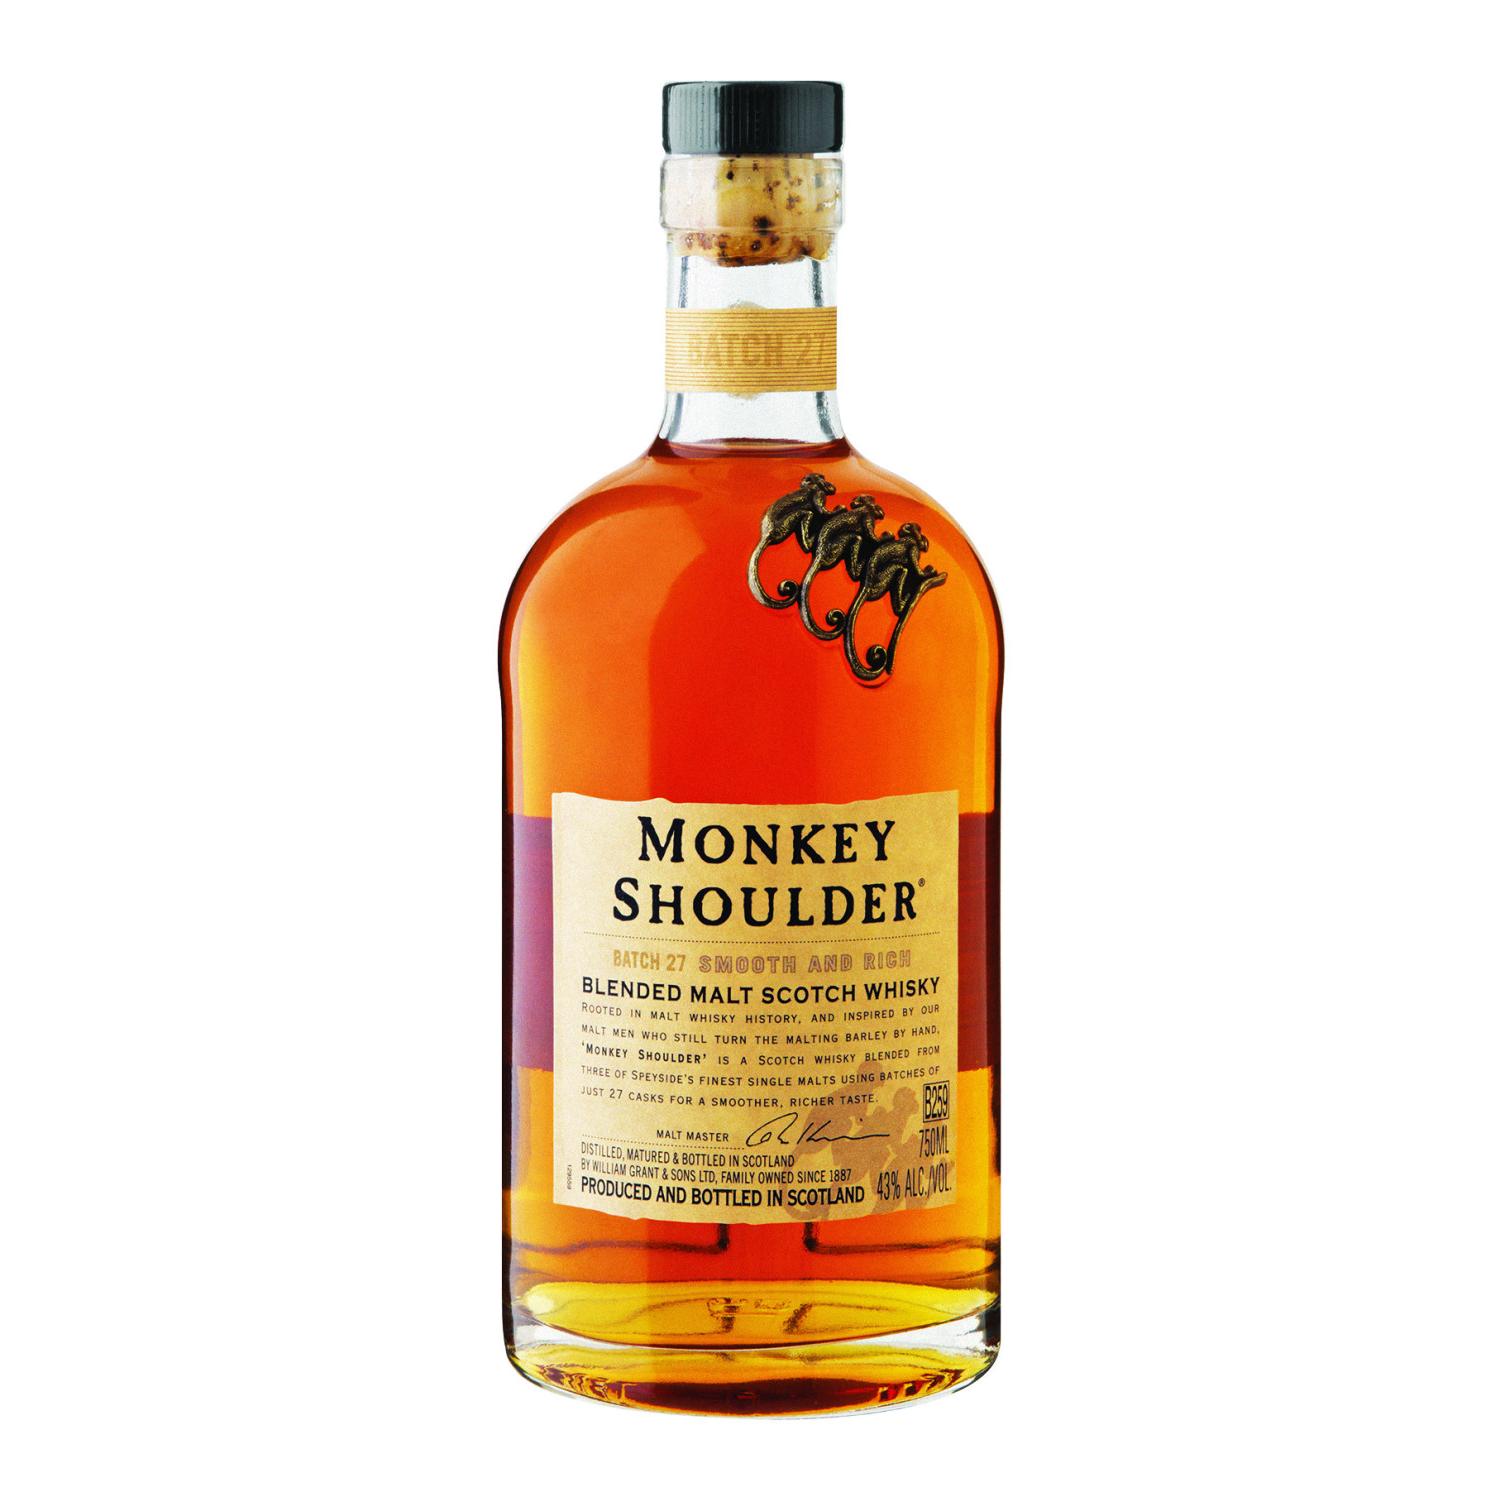 Манки 0.7. Манки Шоулдер виски. Виски Monkey Shoulder, 0.7 л. Виски манки шолдер 0,70. Виски манки шолдер 0.7.